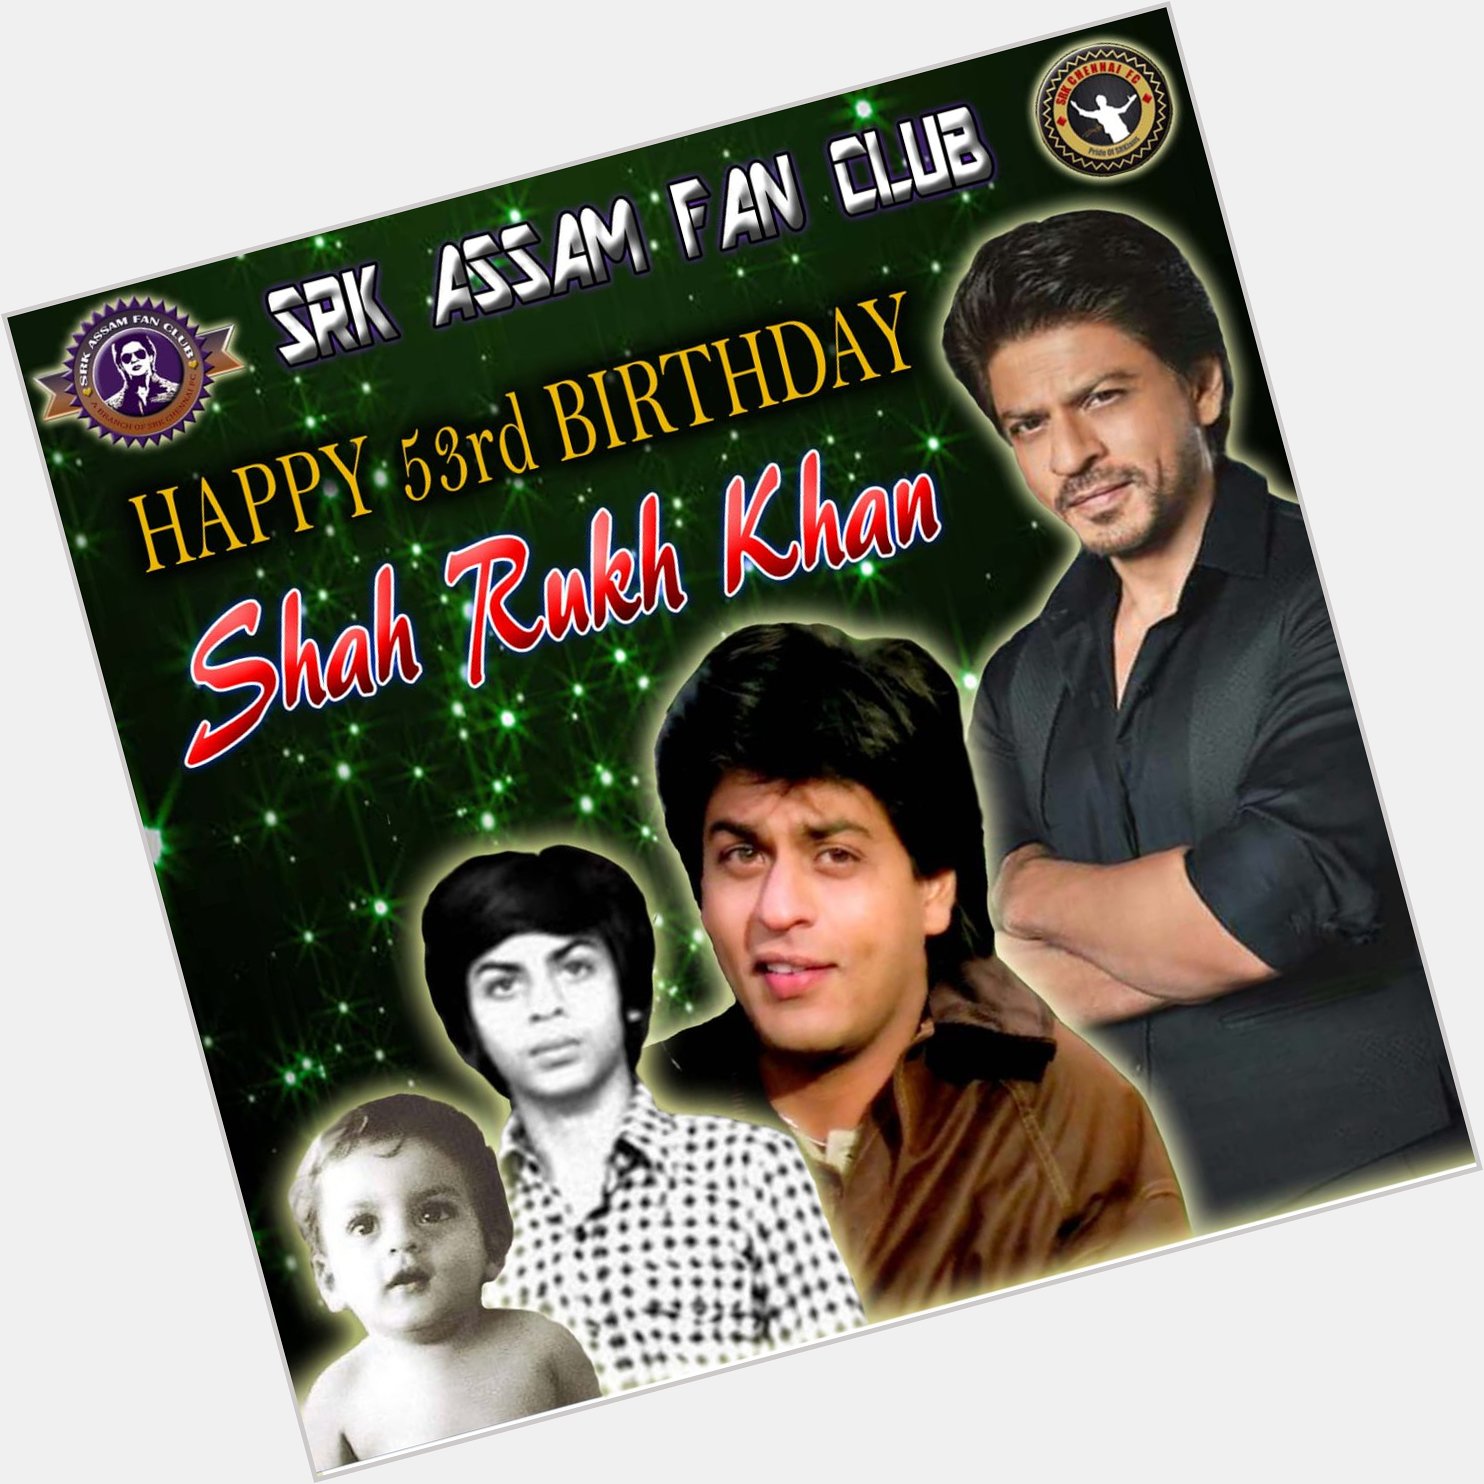 3 Days to   \s Birthday...

Happy birthday Shahrukh Khan in Advance. 